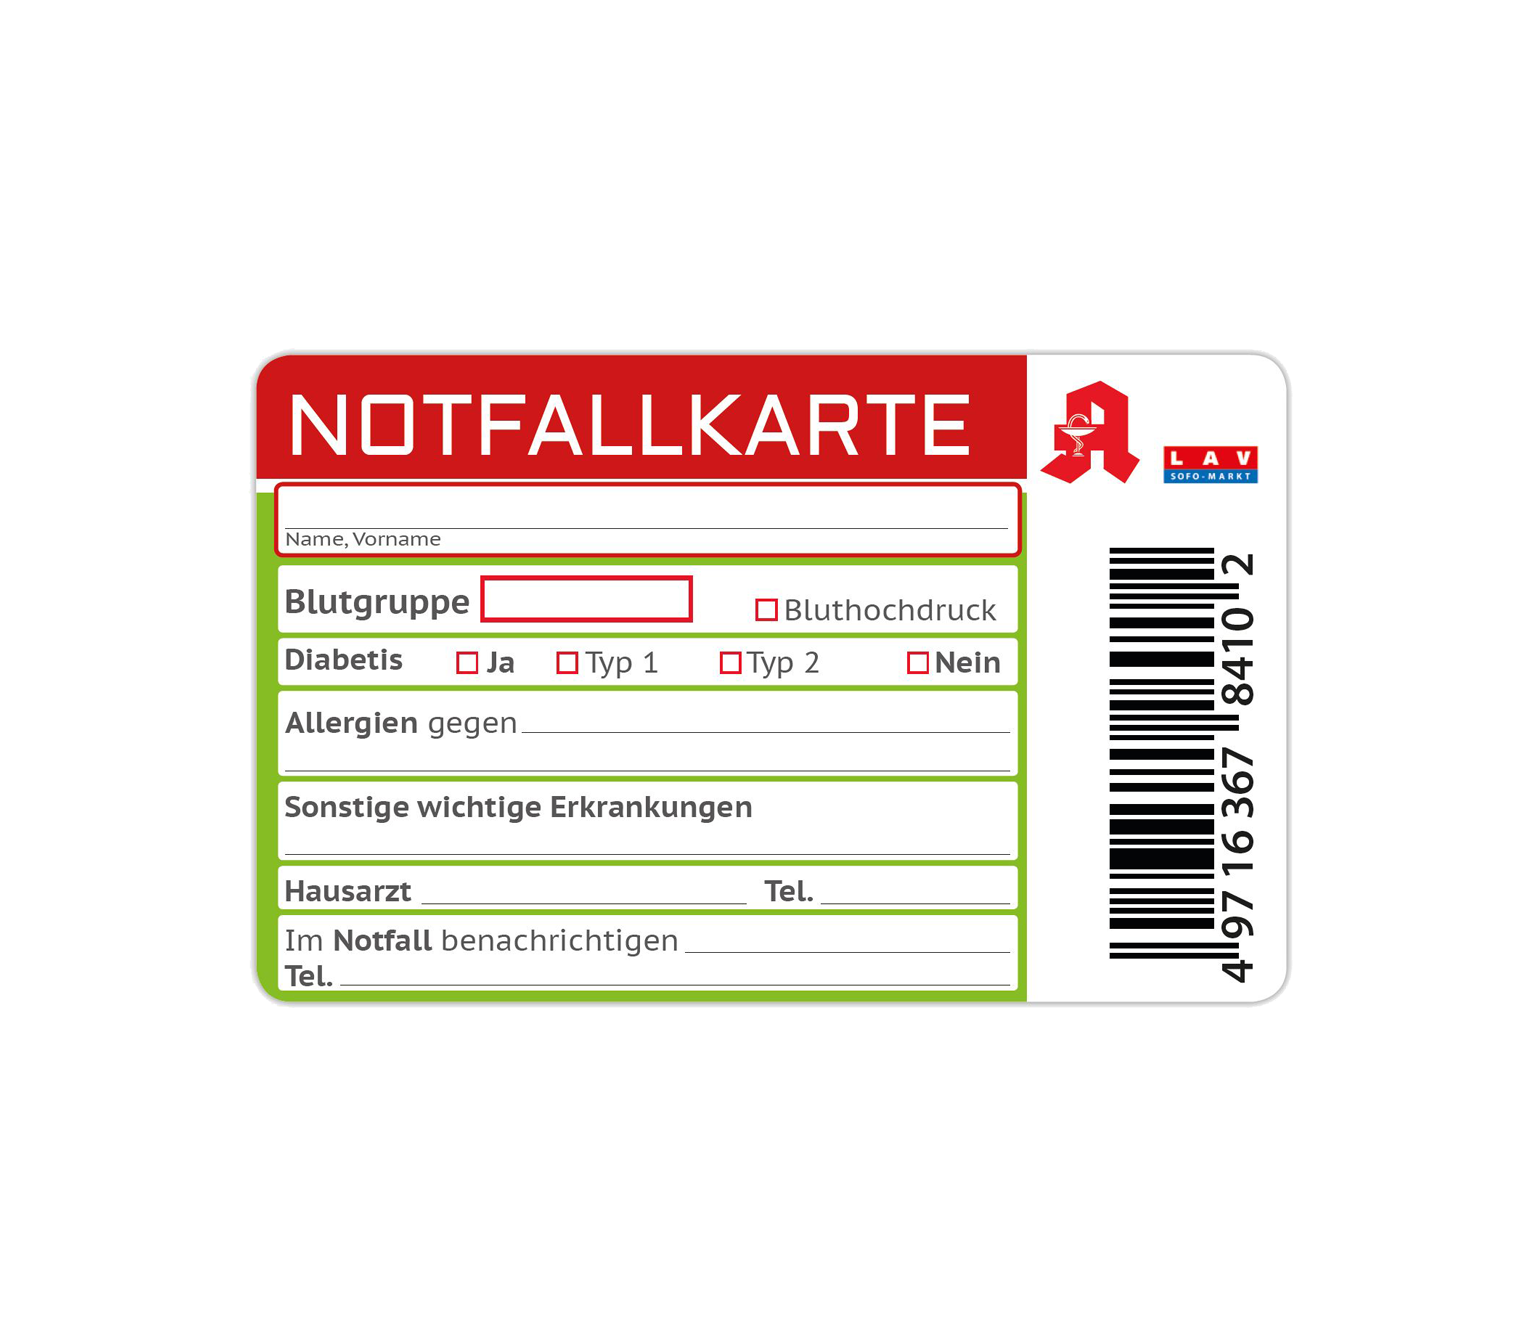 https://lav-sofo-markt.de/media/image/c8/25/87/2091-011_2091-011-kundenkarte-notfallkarte-rs.png